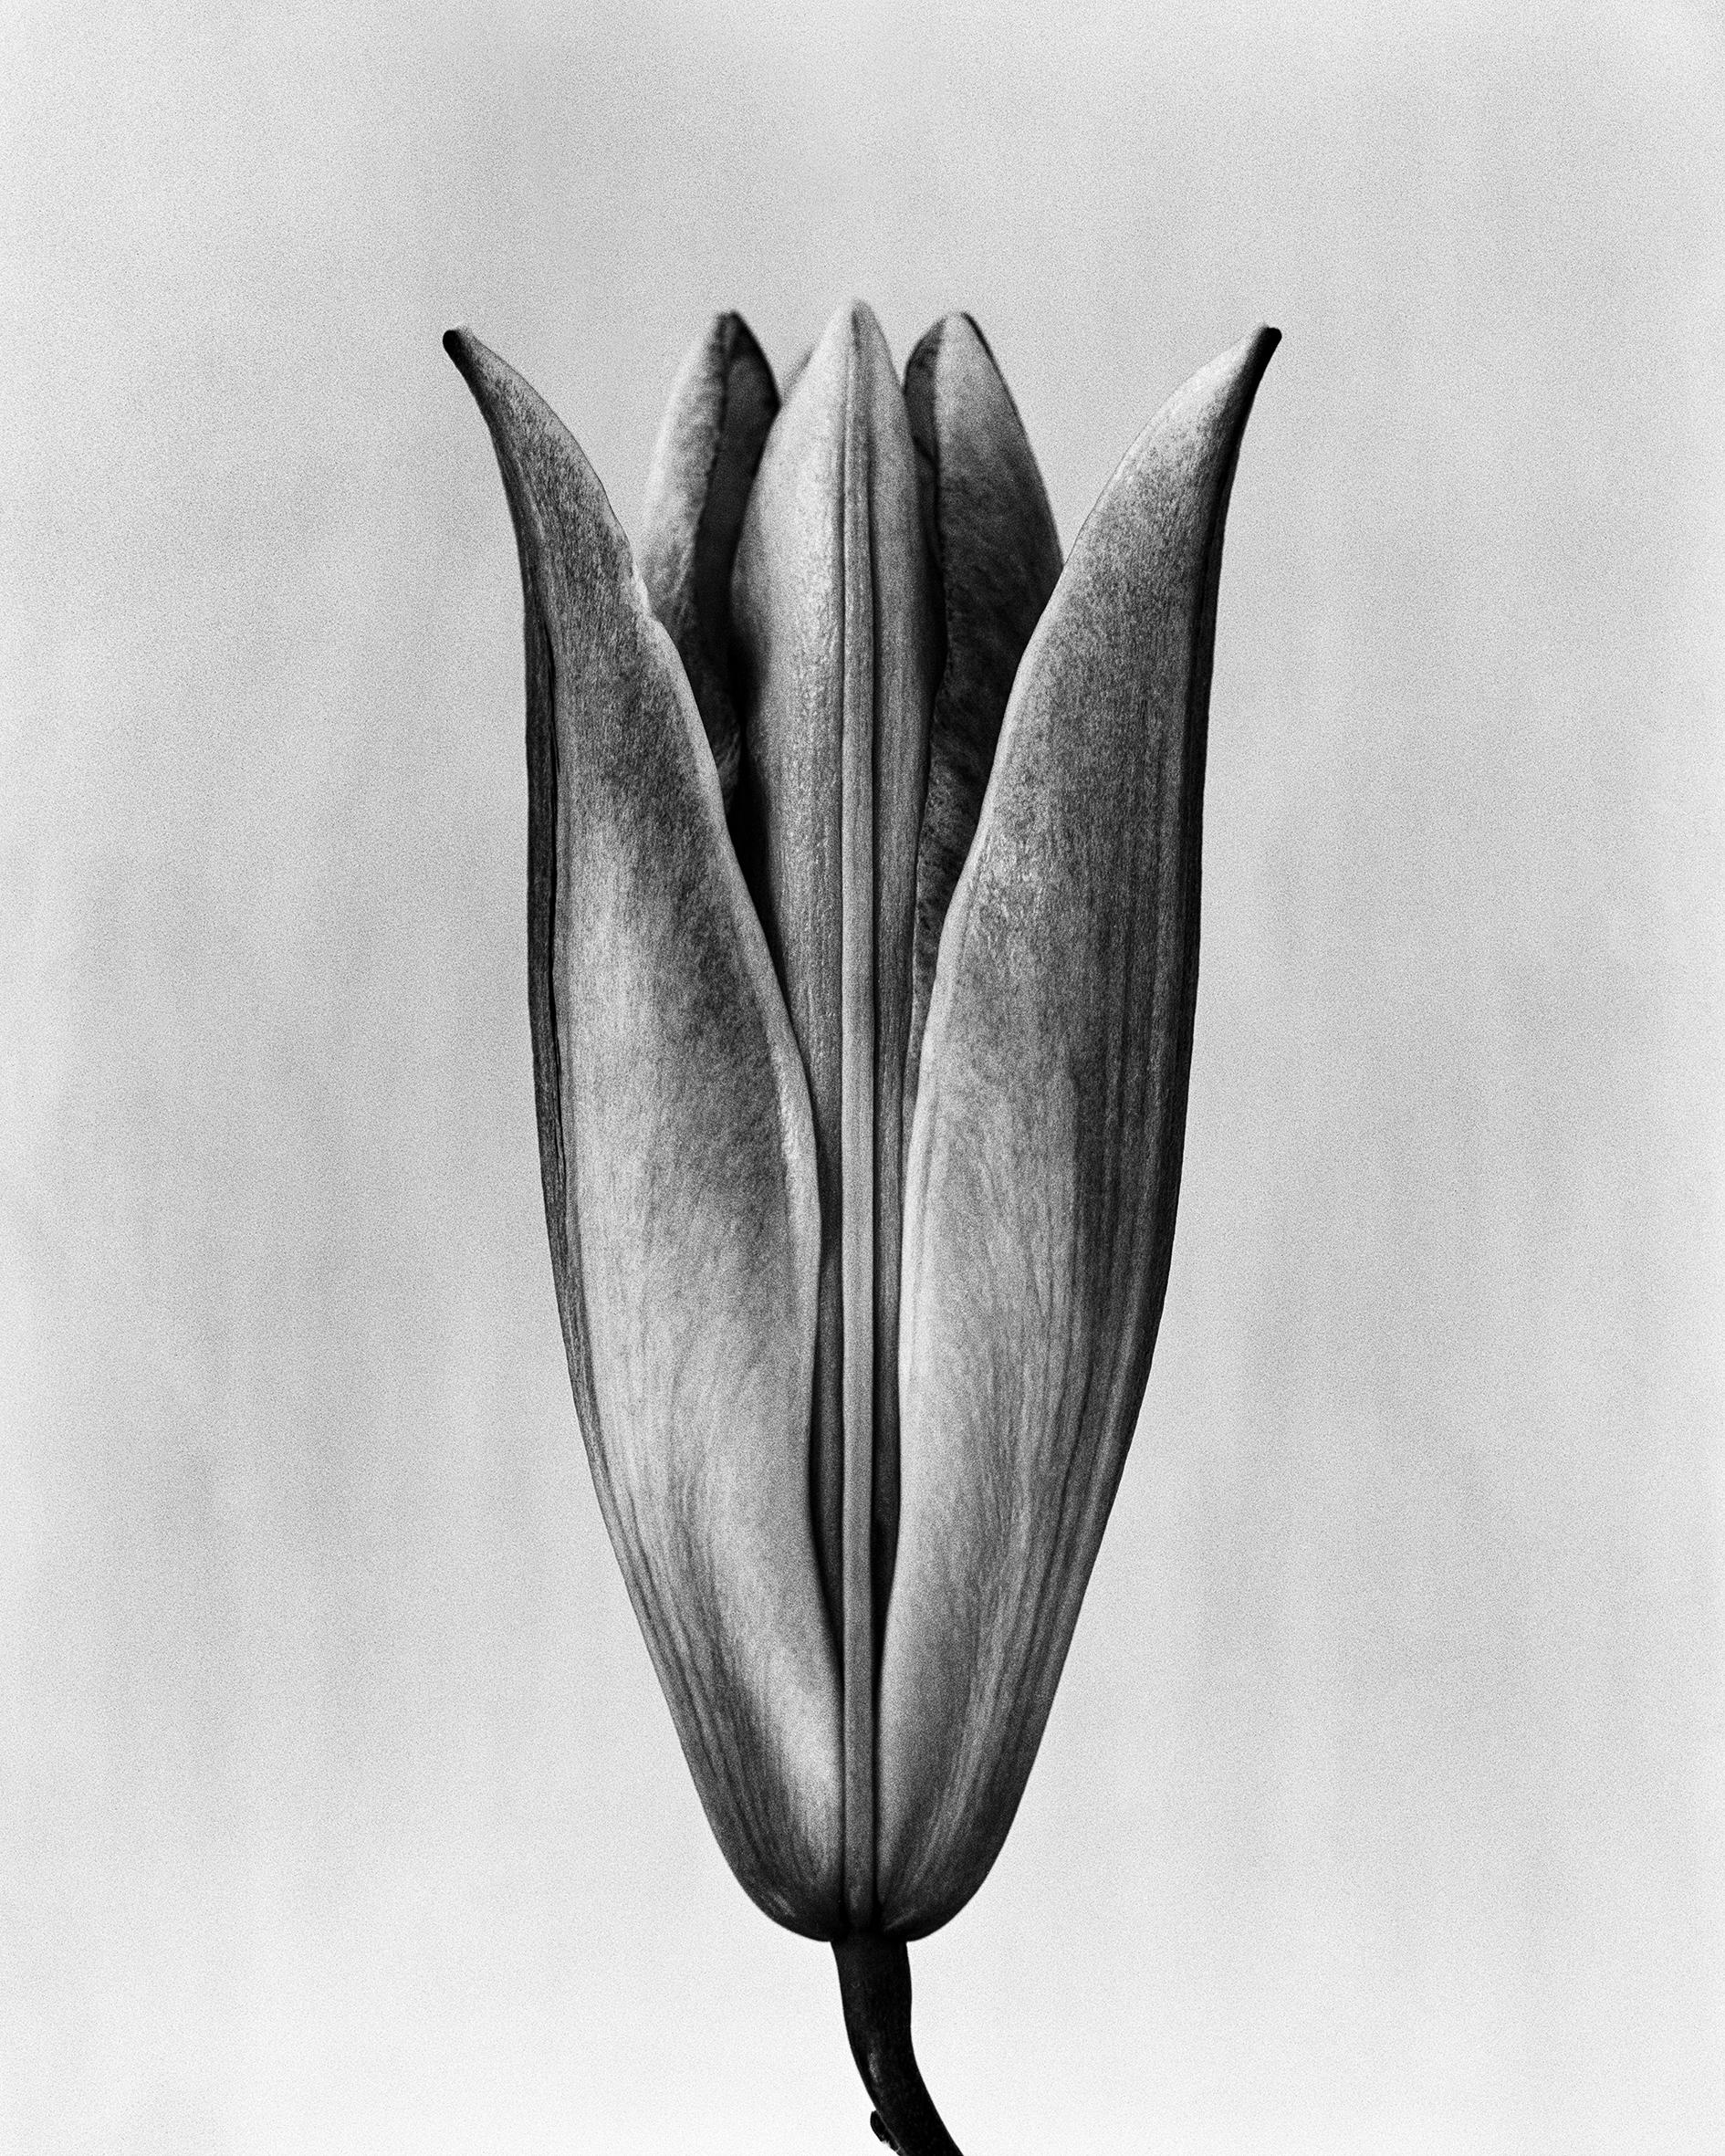 Lily '23 photographie florale analogique en noir et blanc édition de 15 exemplaires